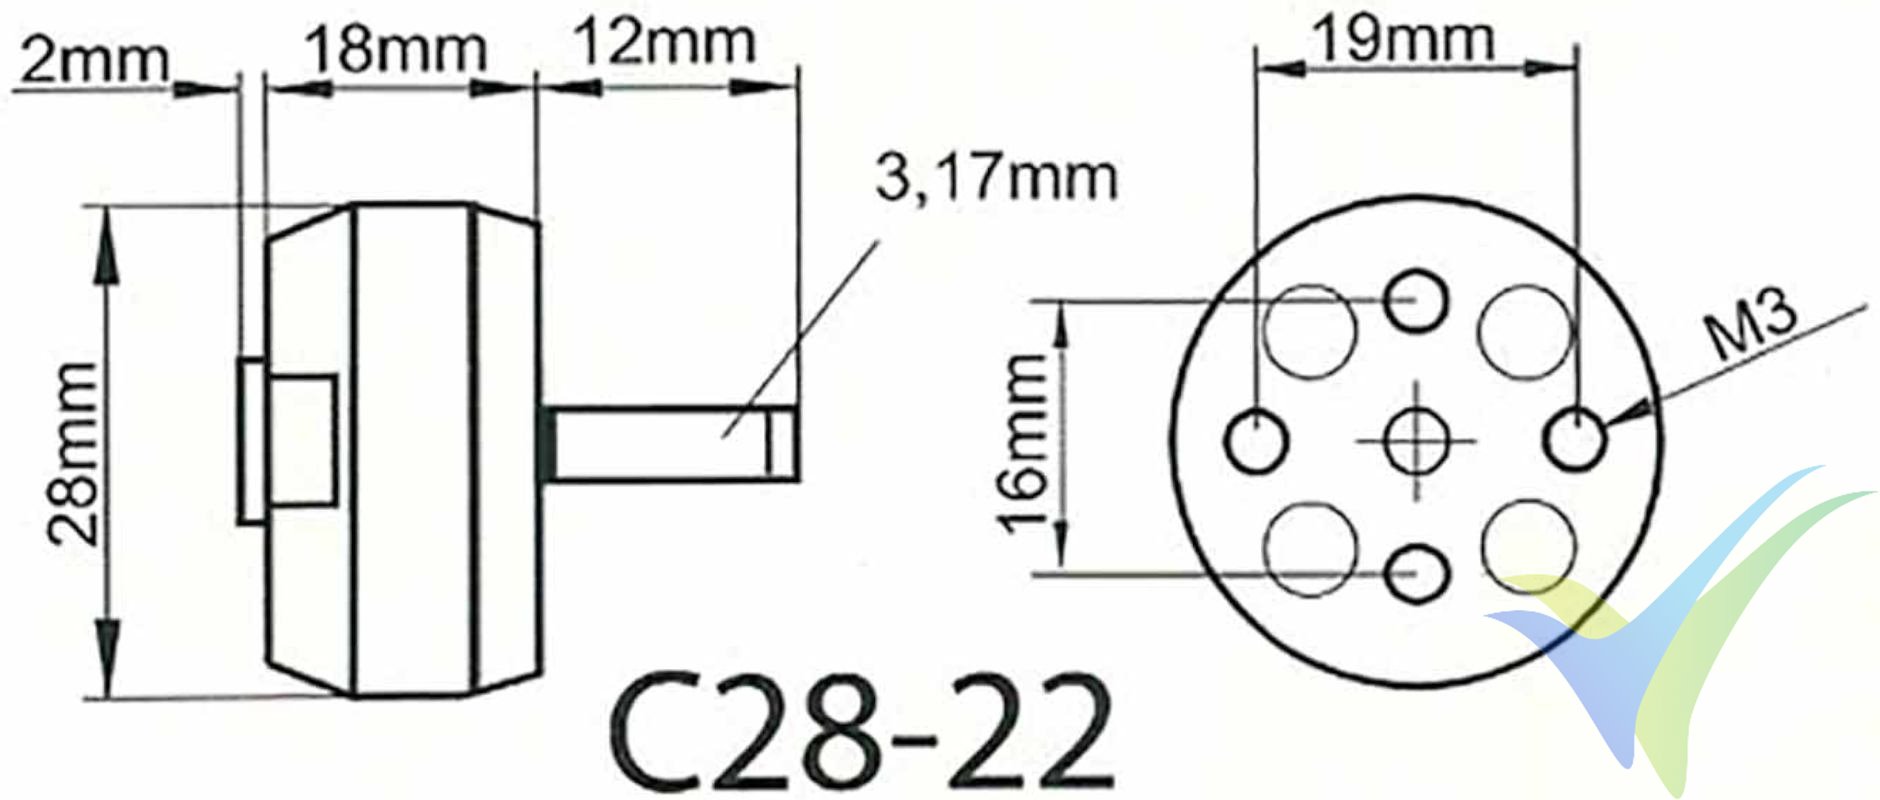 Dimensiones del motor brushless ROXXY BL C28-22-1270Kv